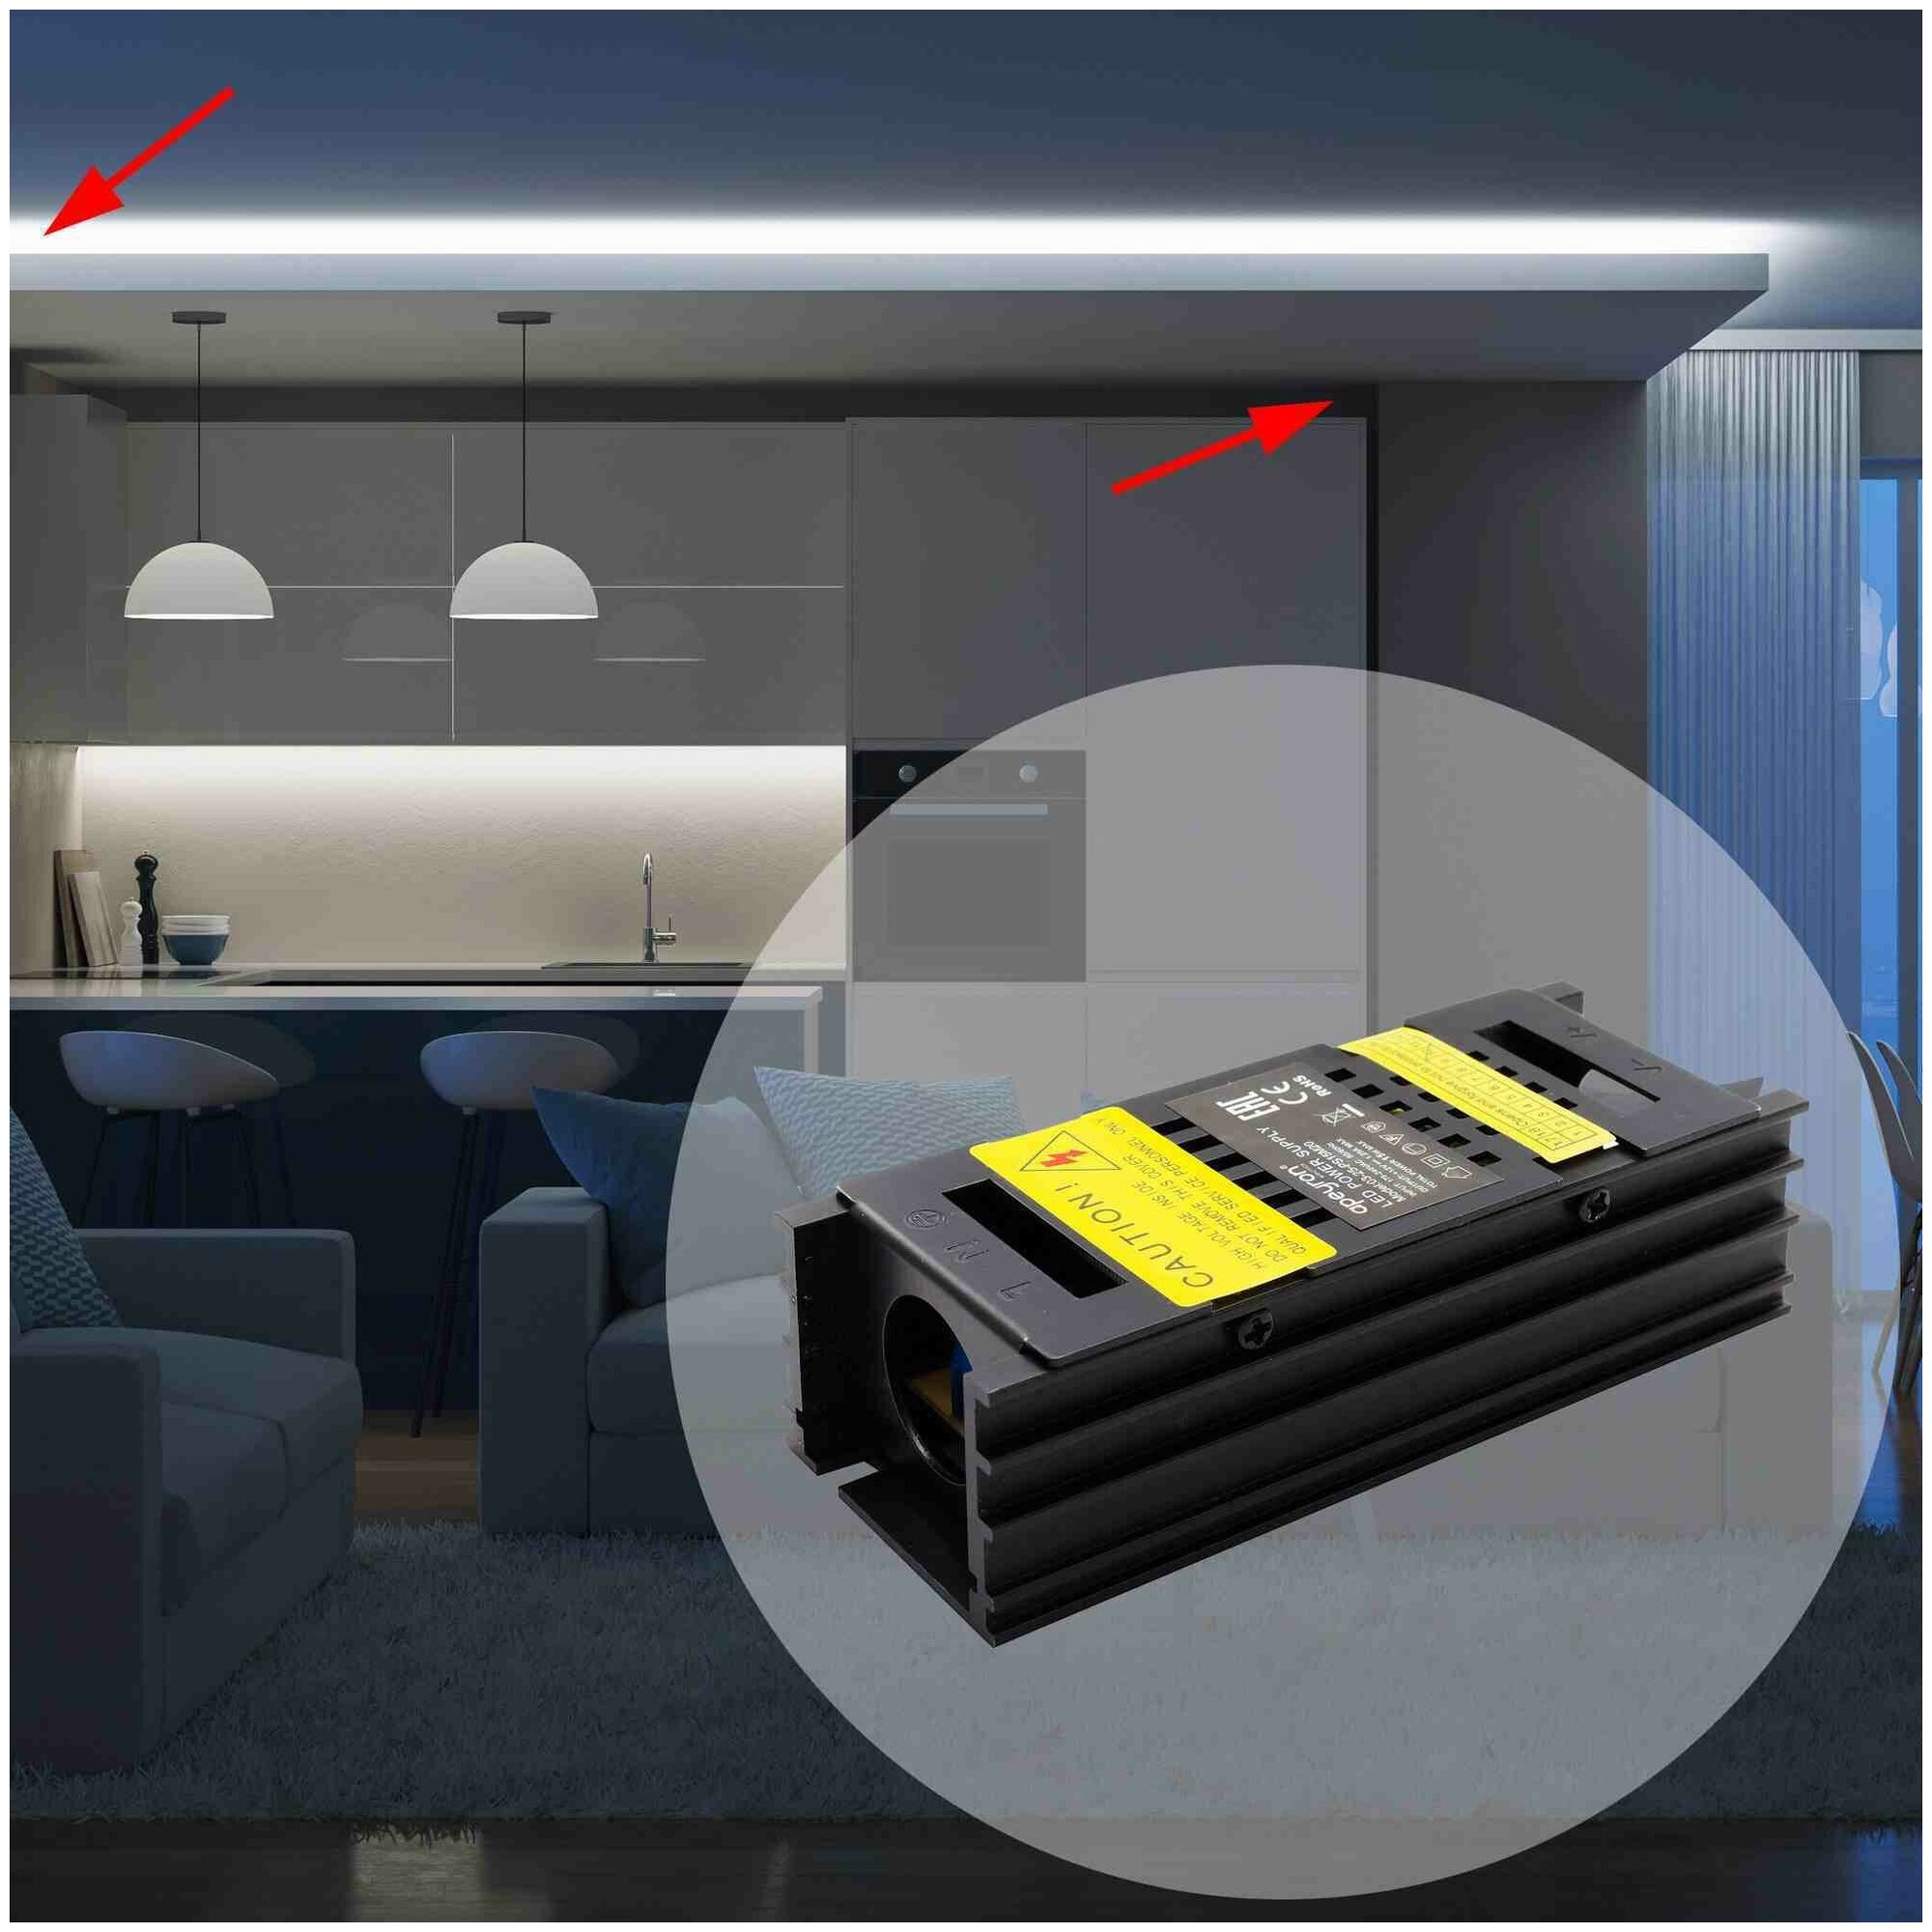 Блок питания в алюминиевом корпусе с напряжением 12В и степенью защиты IP20 для светильника светодиодной ленты или LED лампы / Универсальный адаптер питания для светодиодного освещения 15Вт, AC 85-265В, 1.25А, БП с защитой от перегрузки, 03-25-1